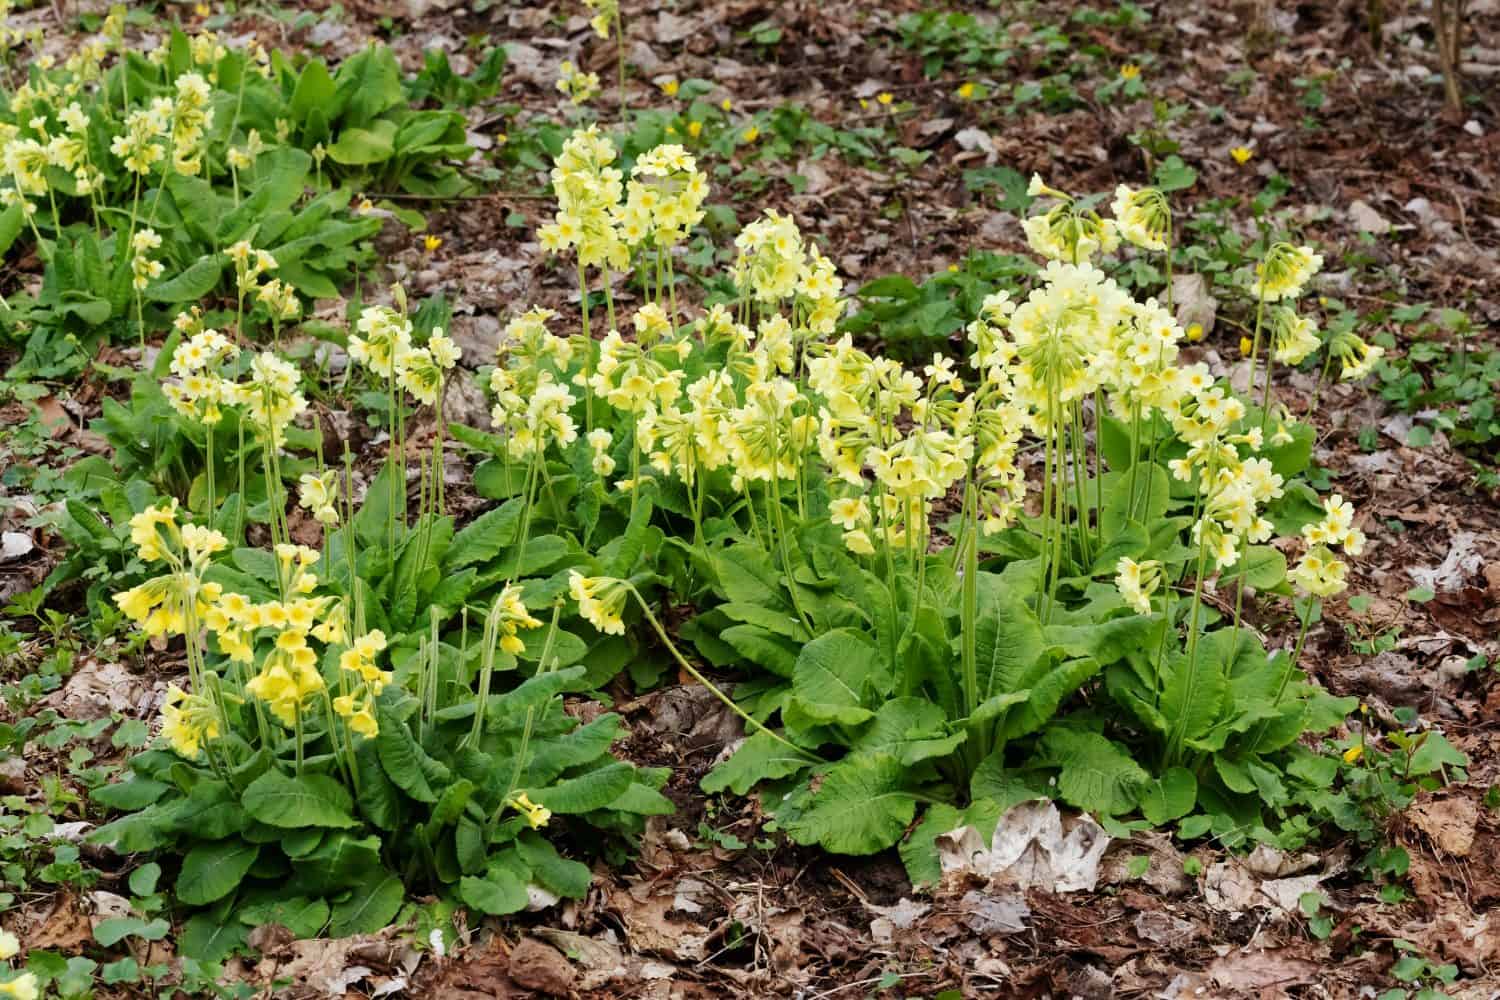 I fiori e le foglie giallo chiaro del vero oxlip (Primula elatior).  Il vero oxlip è uno dei primi fiori a sbocciare in primavera.